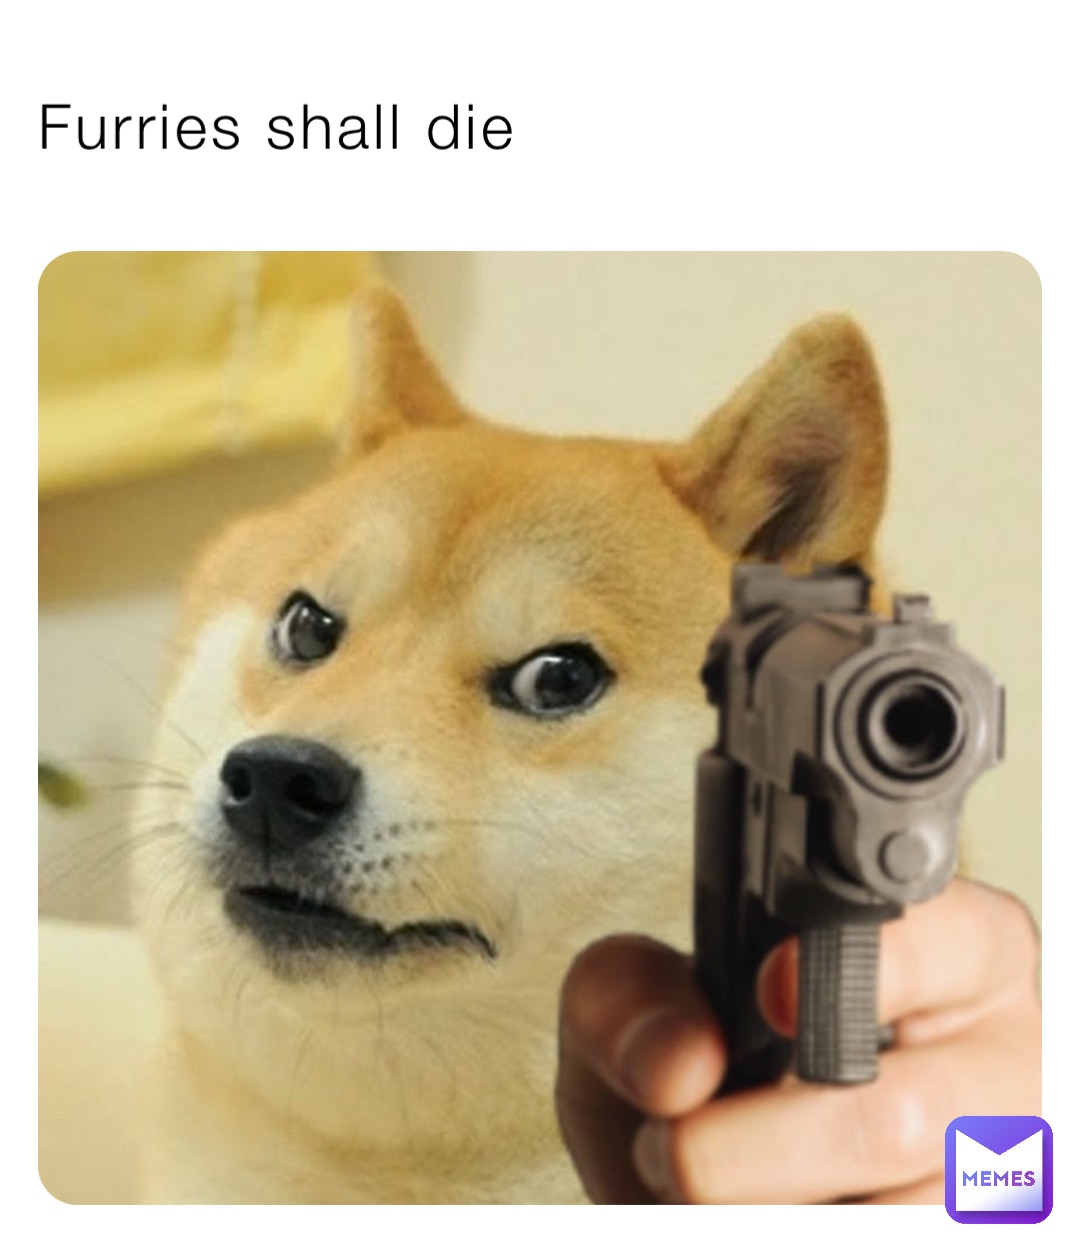 Furries shall die